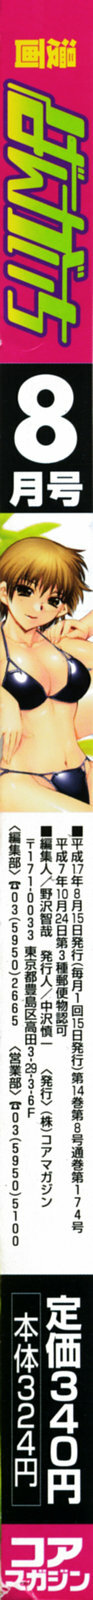 Manga Bangaichi 2005-08 page 2 full